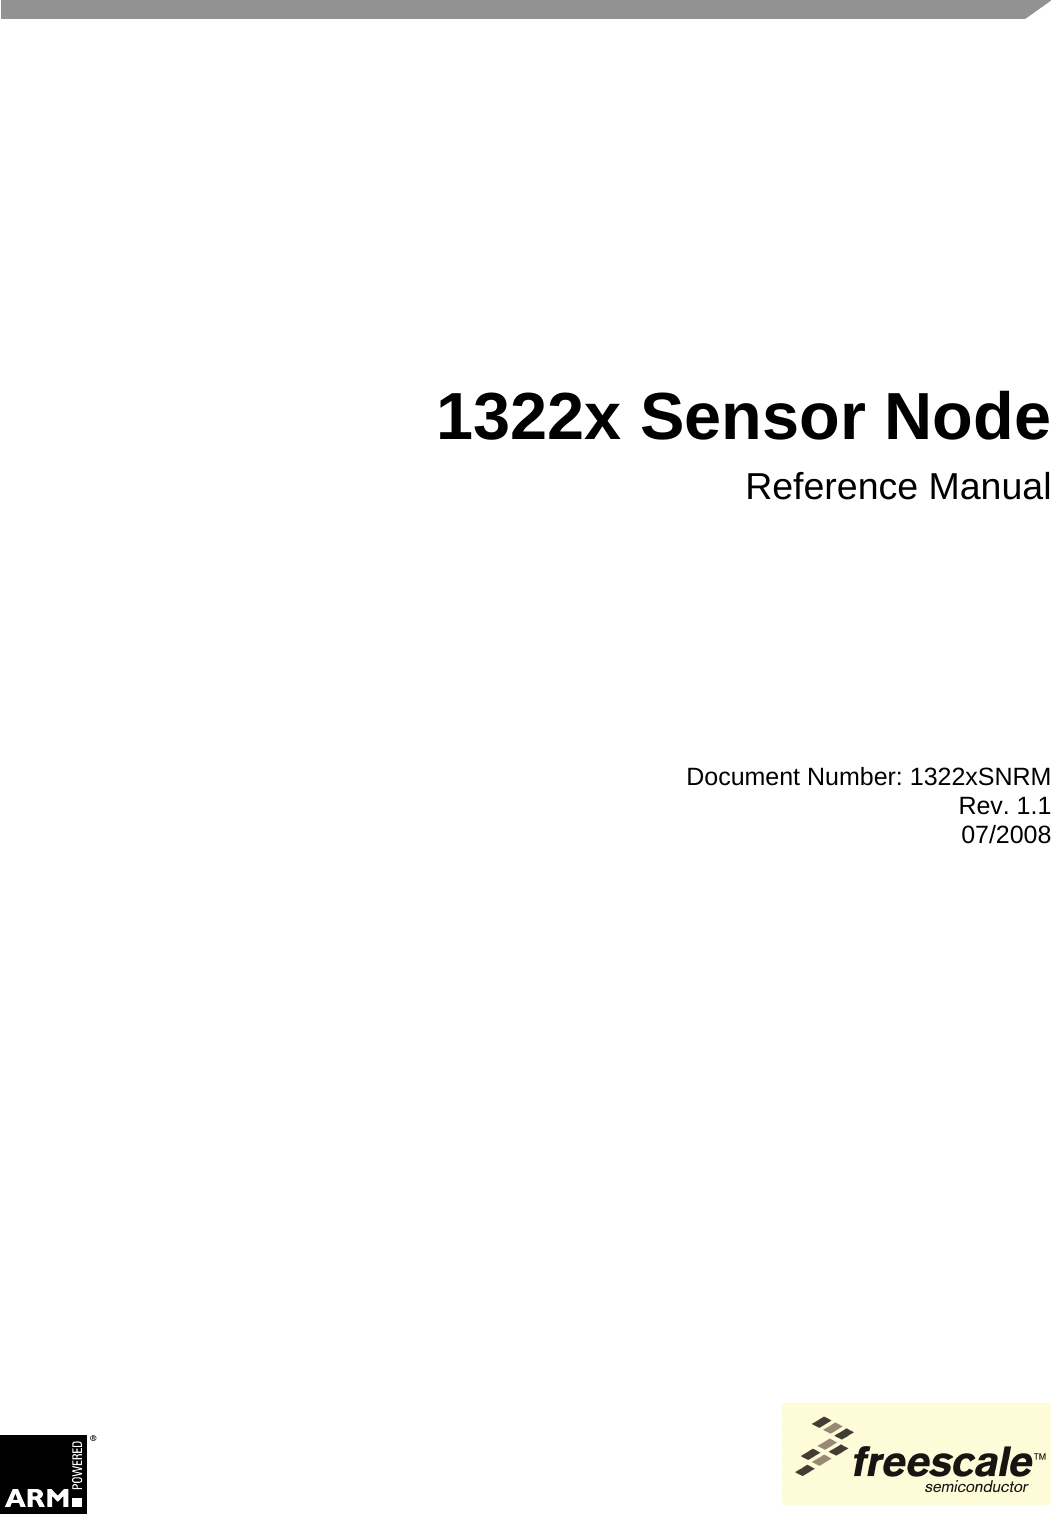 Document Number: 1322xSNRMRev. 1.107/2008 1322x Sensor NodeReference Manual